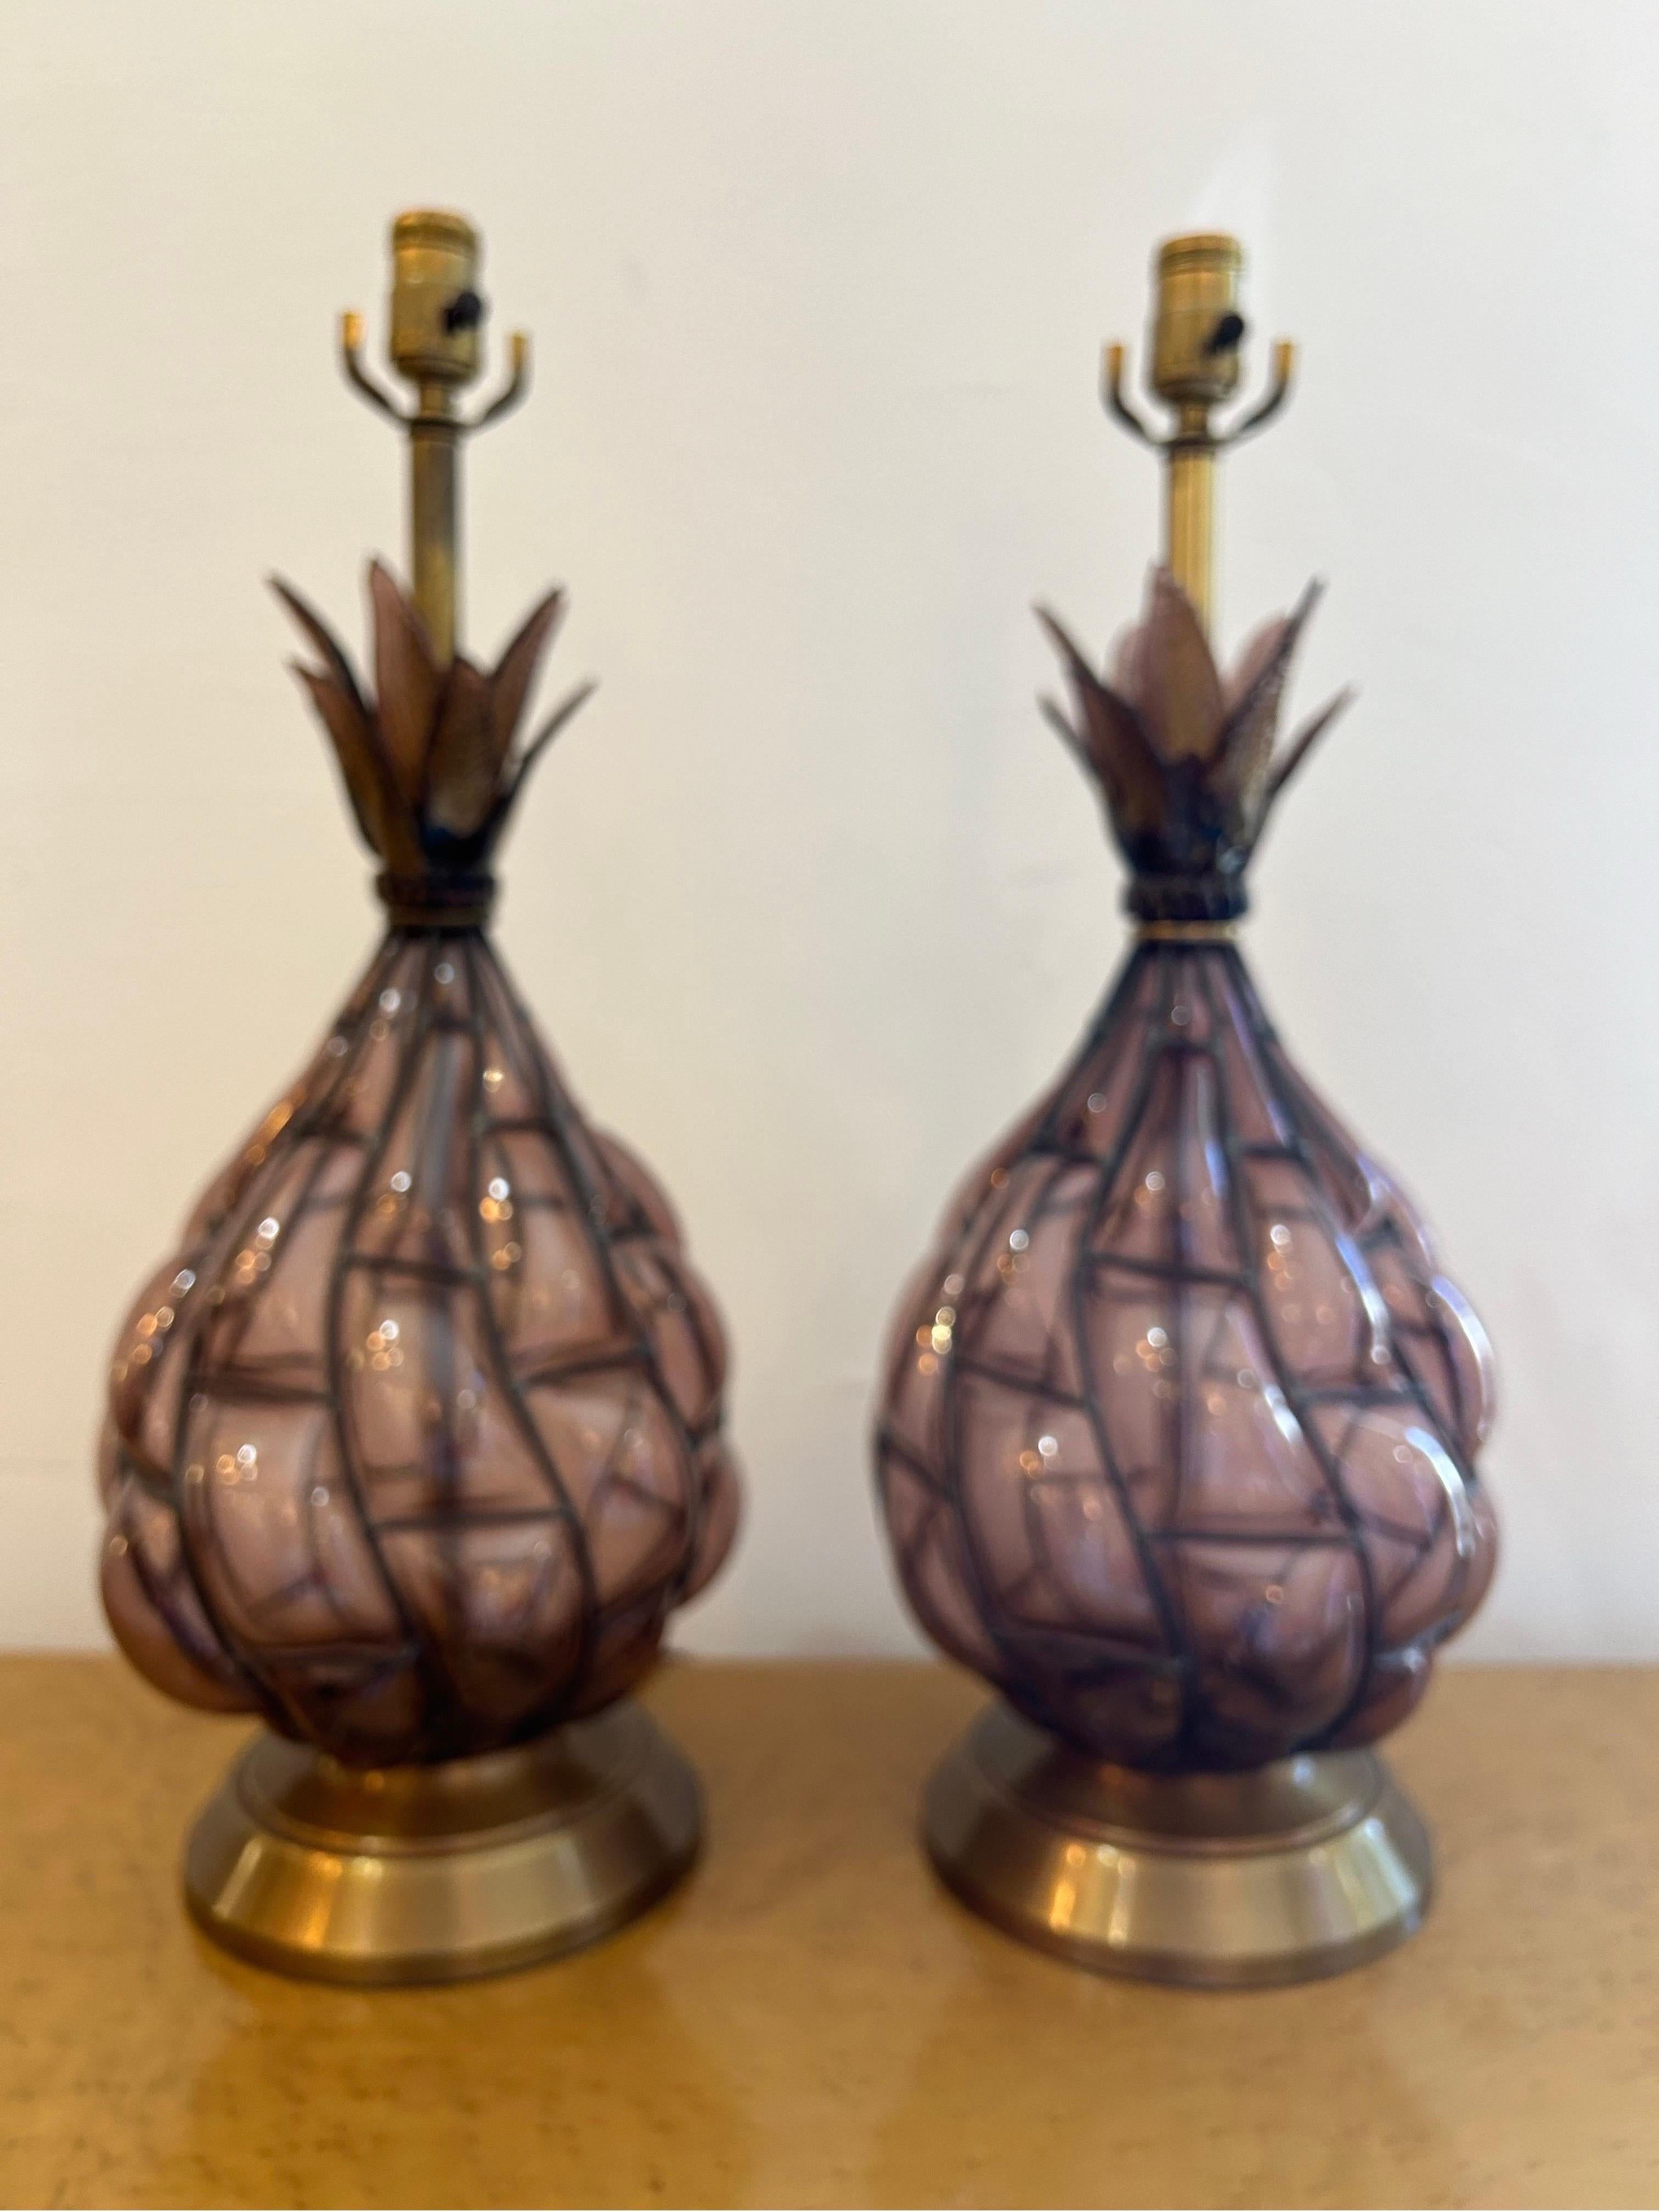 Ein Paar brillante Lampen aus amethystfarbenem Murano-Glas in einem Metallrahmen, mundgeblasen in Perfektion. Gekrönt mit gläsernen Ananasblättern, die glitzern...